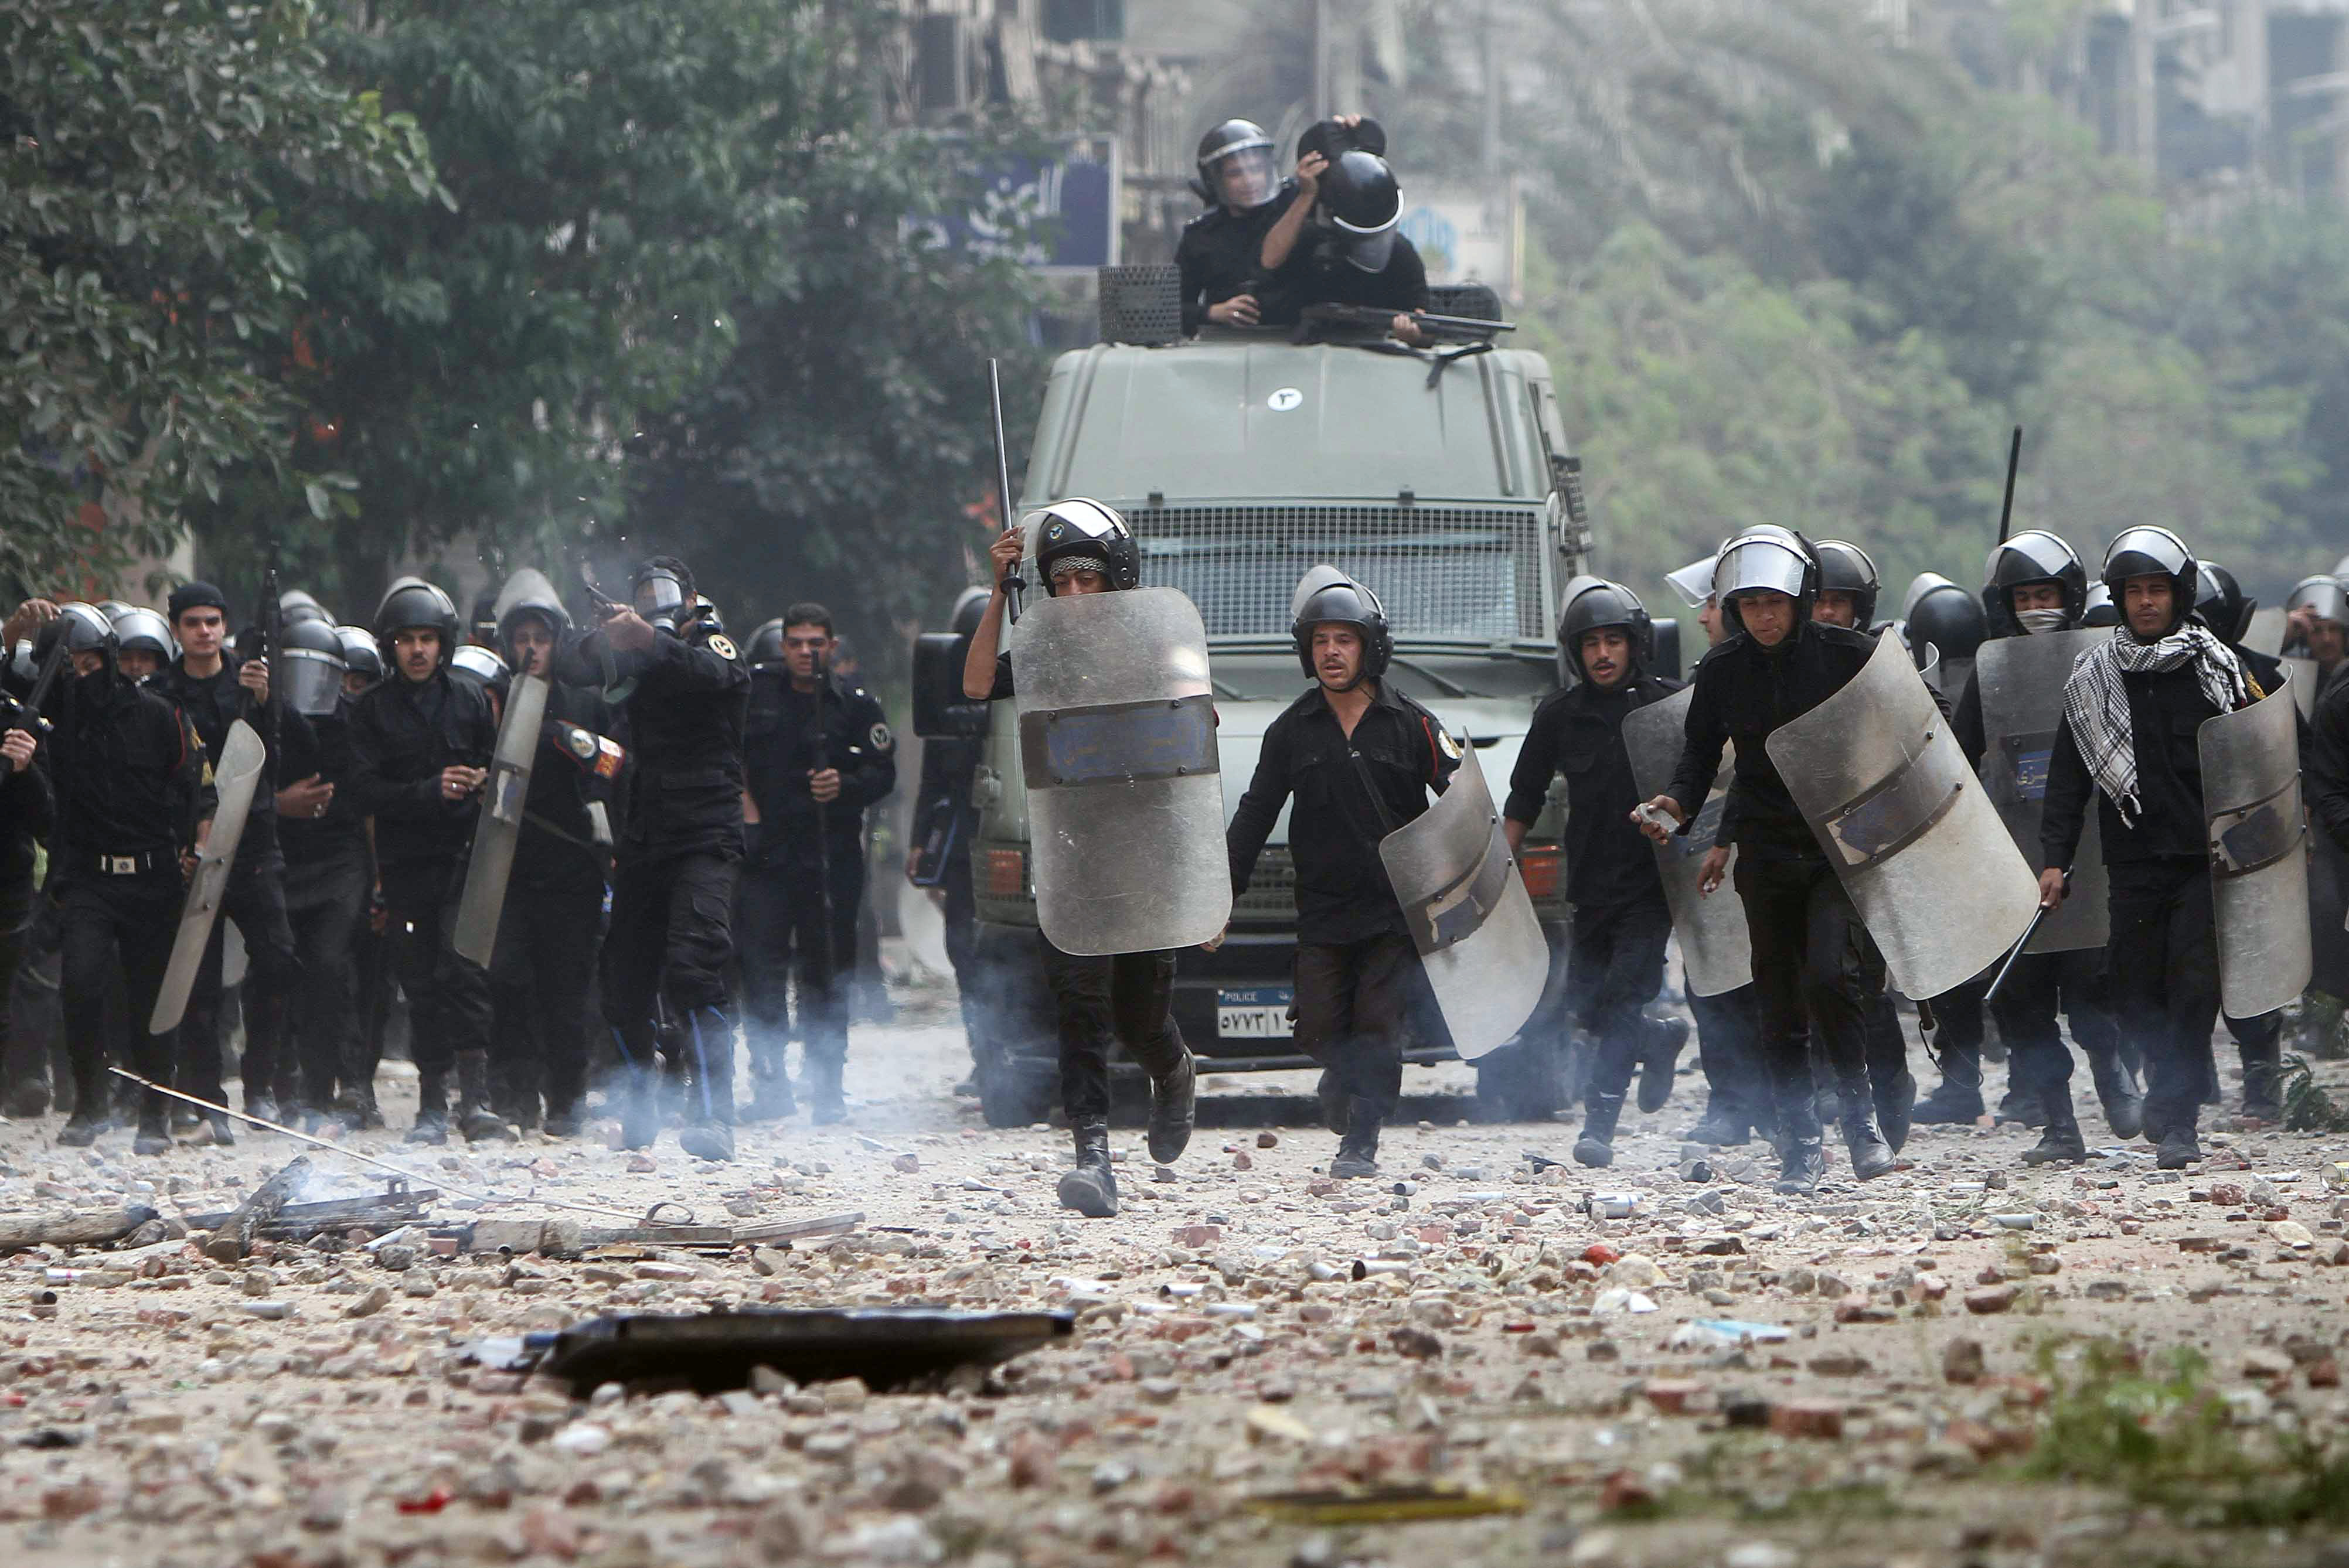 Militar, Egypten, Tårgas, Kairo, Kravaller, Brott och straff, Protester